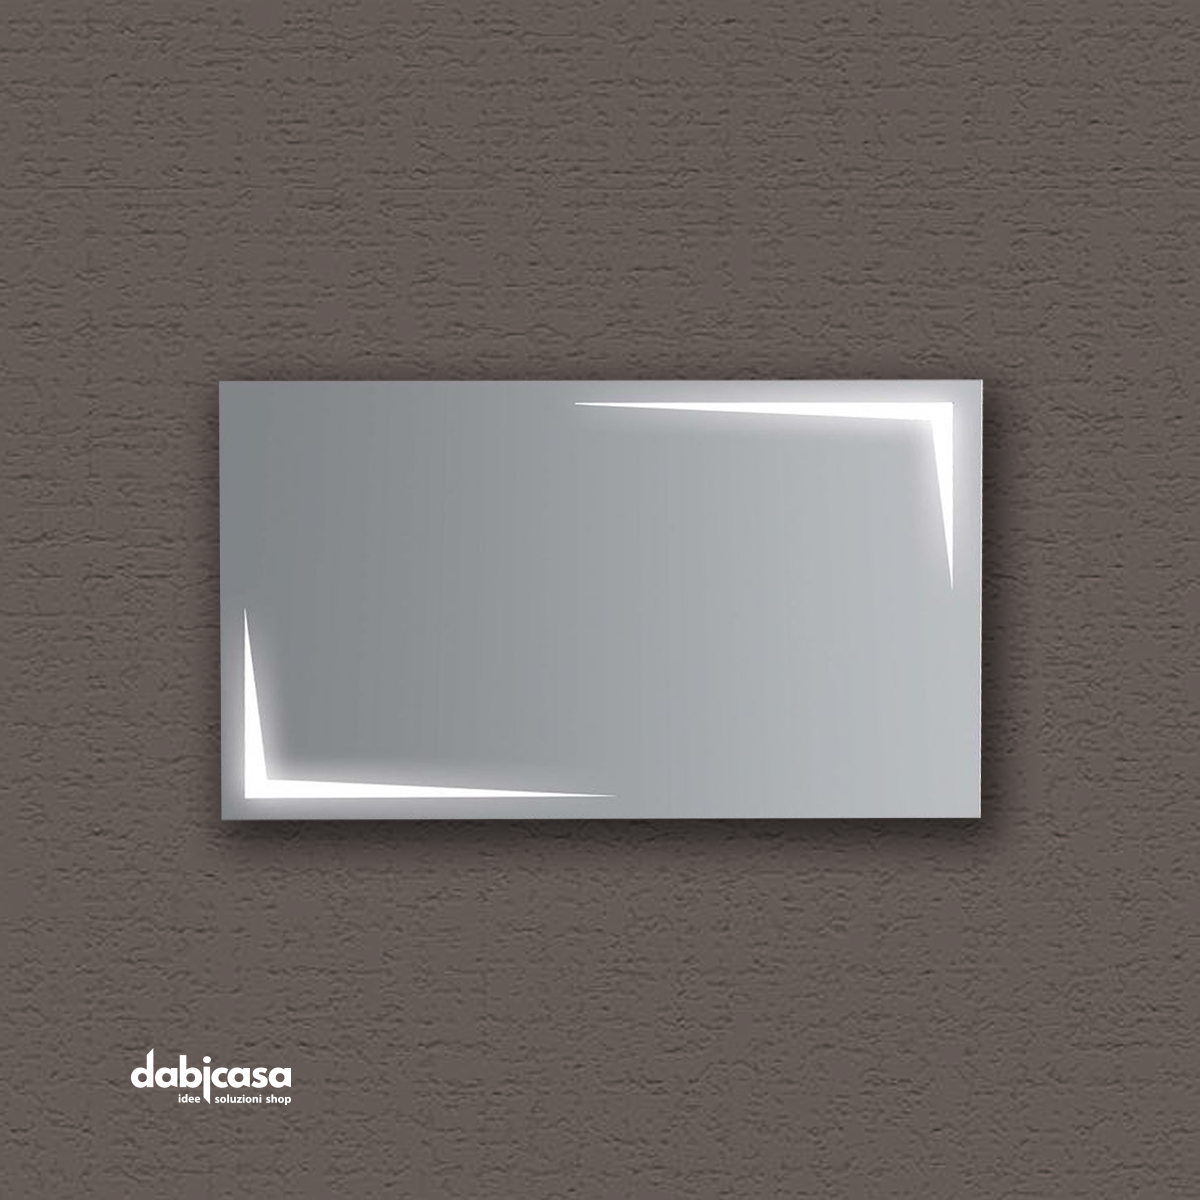 Specchio Linea "Zeus" Retroilluminato Con Decori LED 80x60 cm Reversibile freeshipping - Dabicasa